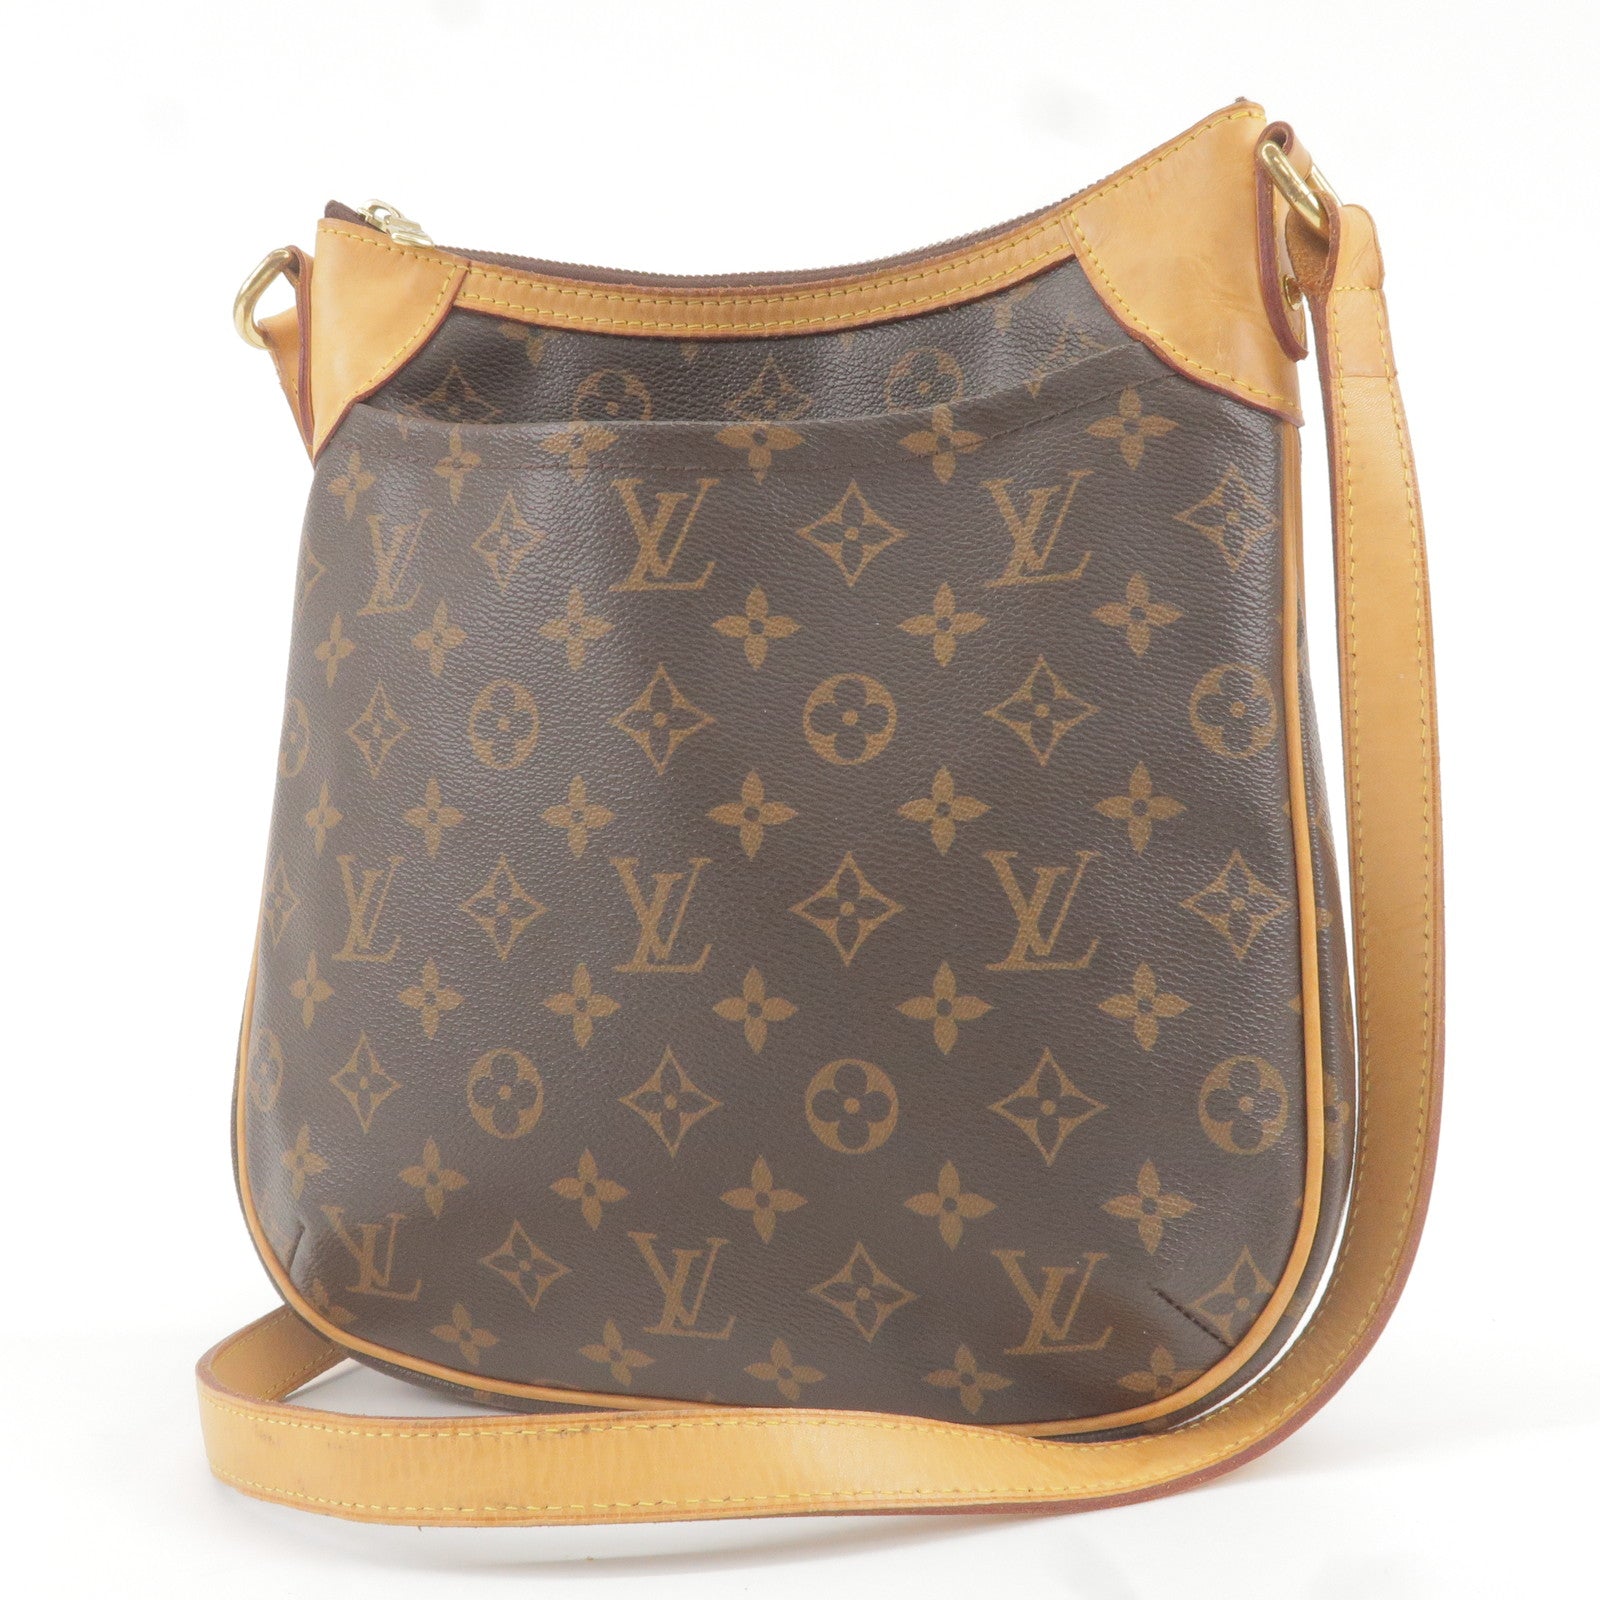 Sac à main Louis Vuitton L en cuir Mahina métal argenté - Louis - Monogram  - Bag - PM - Shoulder - Odeon - Vuitton - ep_vintage luxury Store - M56390  – dct